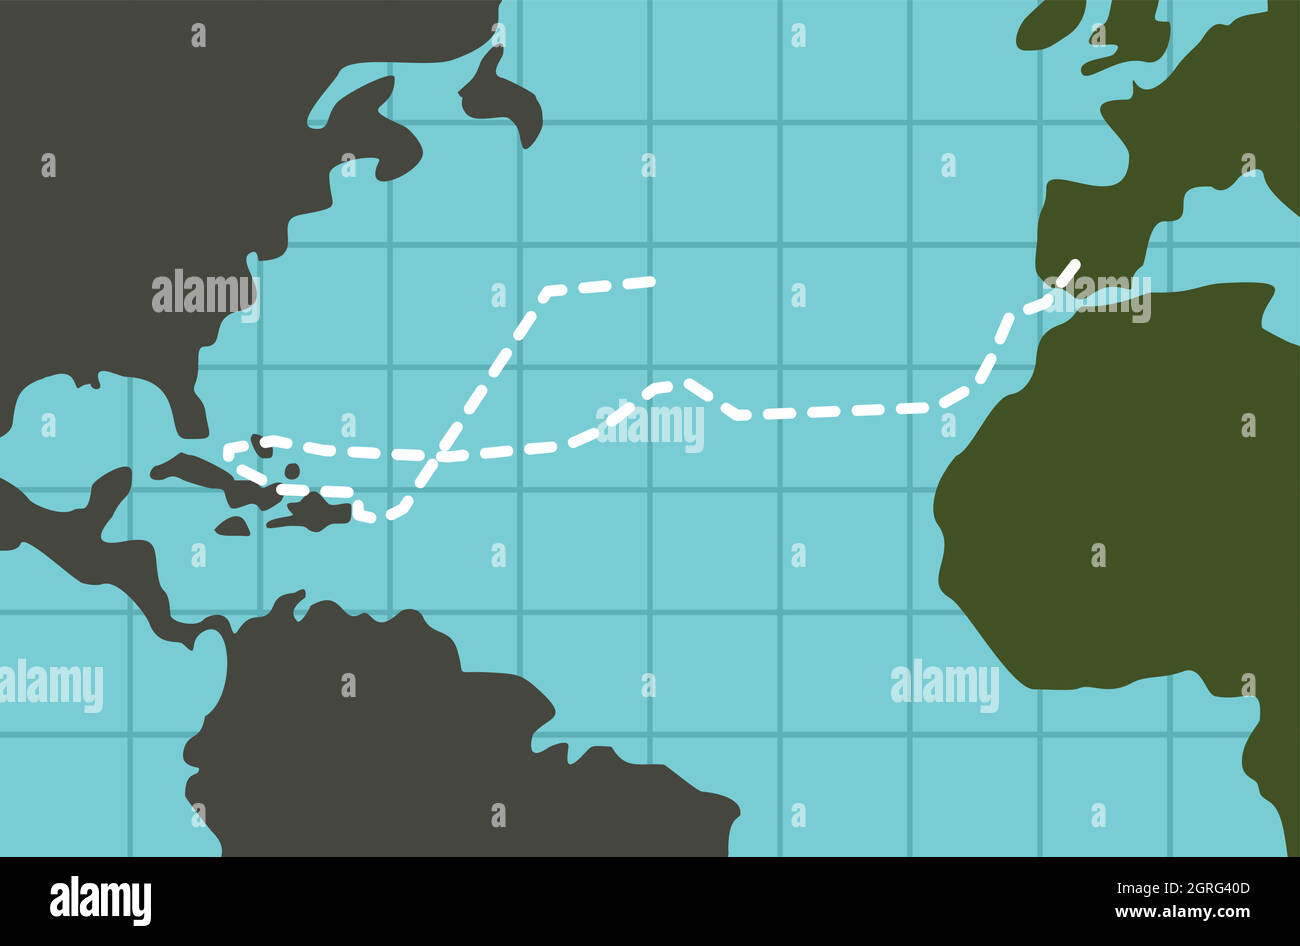 columbus 4th voyage map